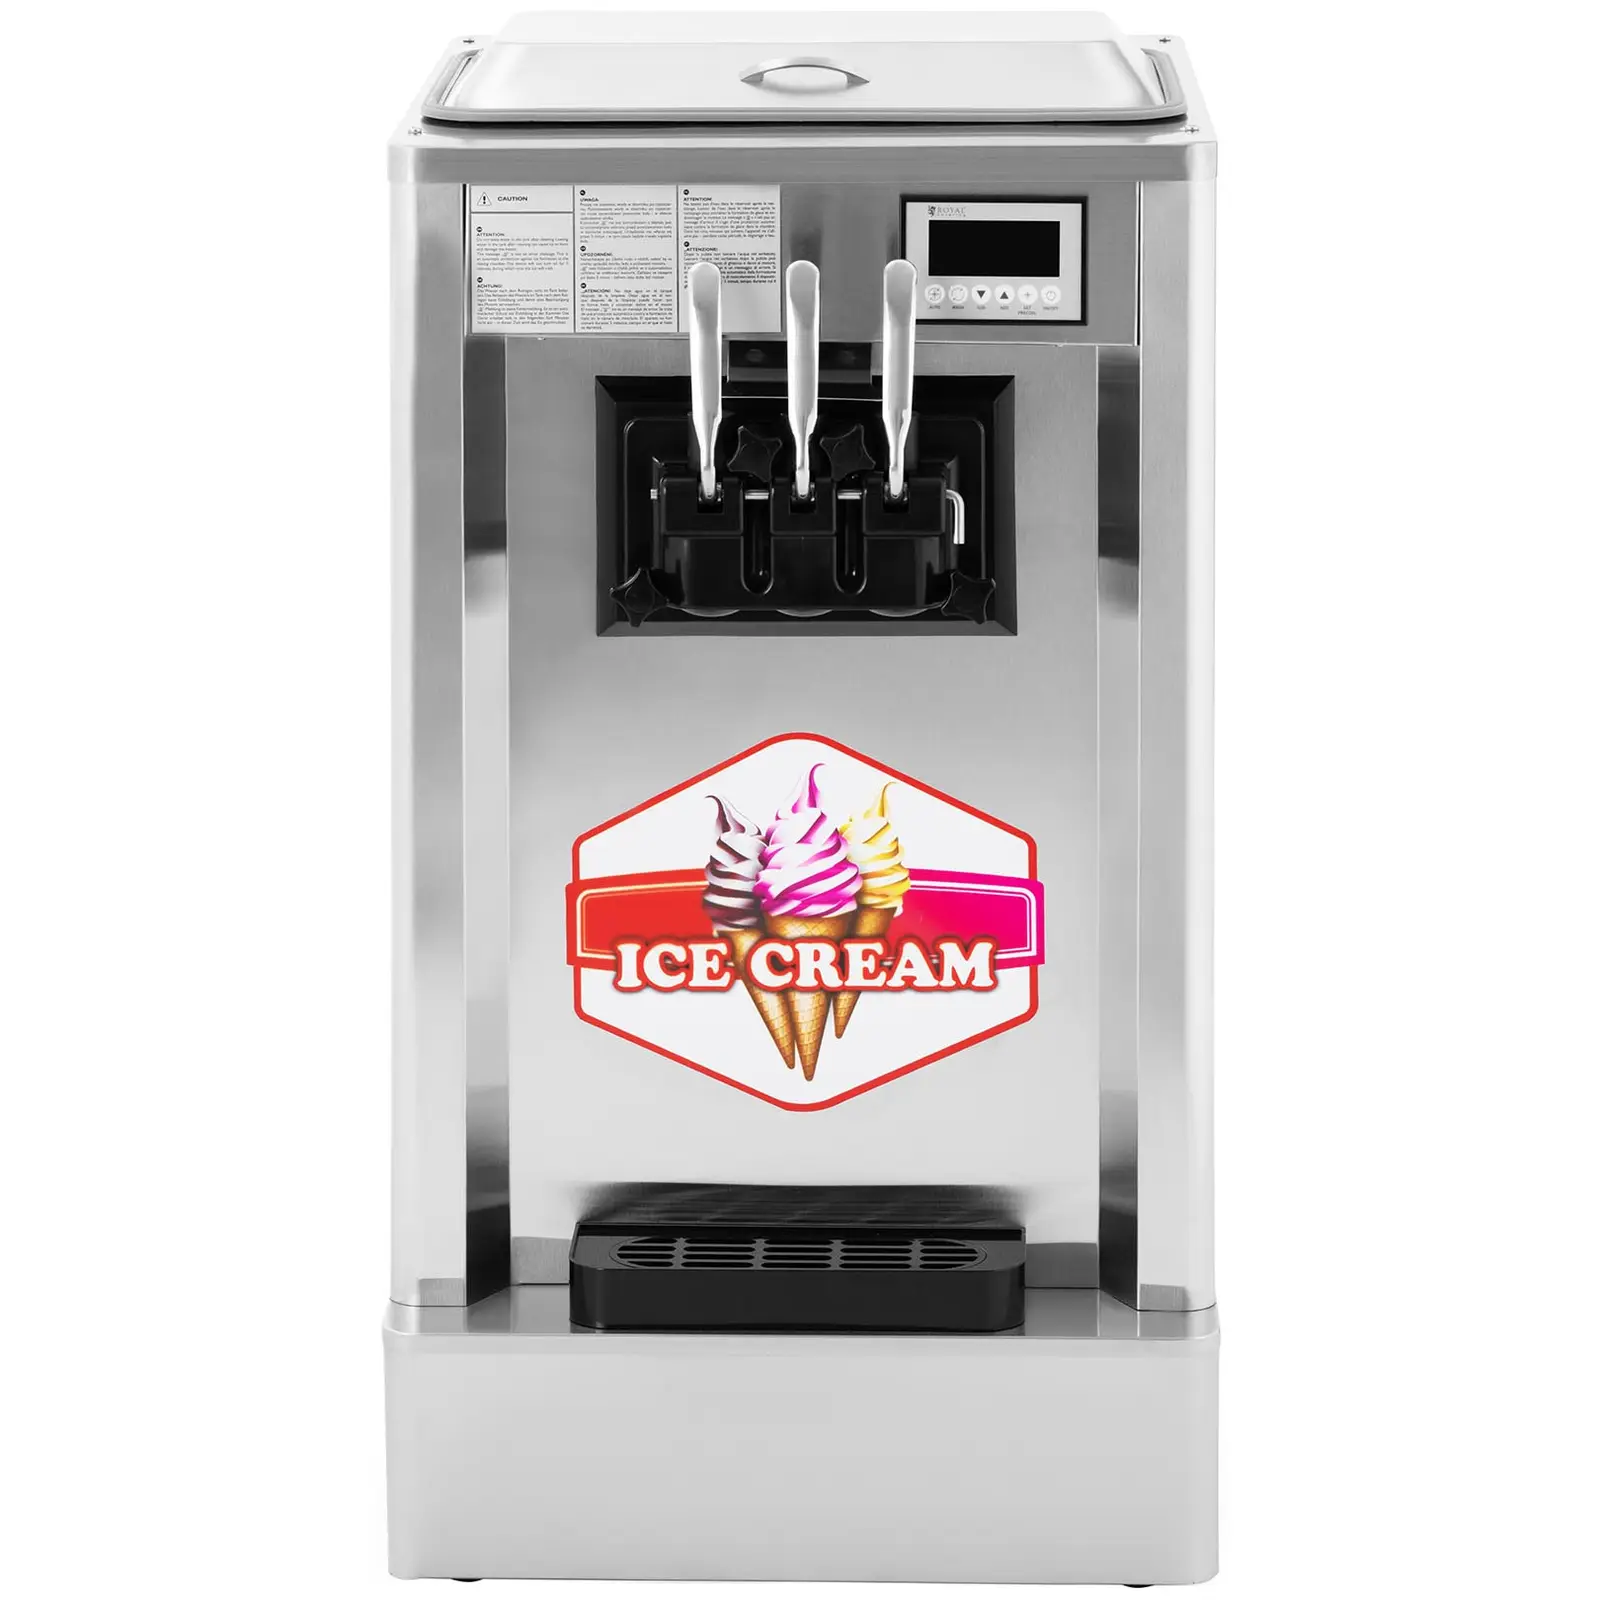 Stroj na točenou zmrzlinu - 1 550 W - 23 l/h - třípákový - Royal Catering